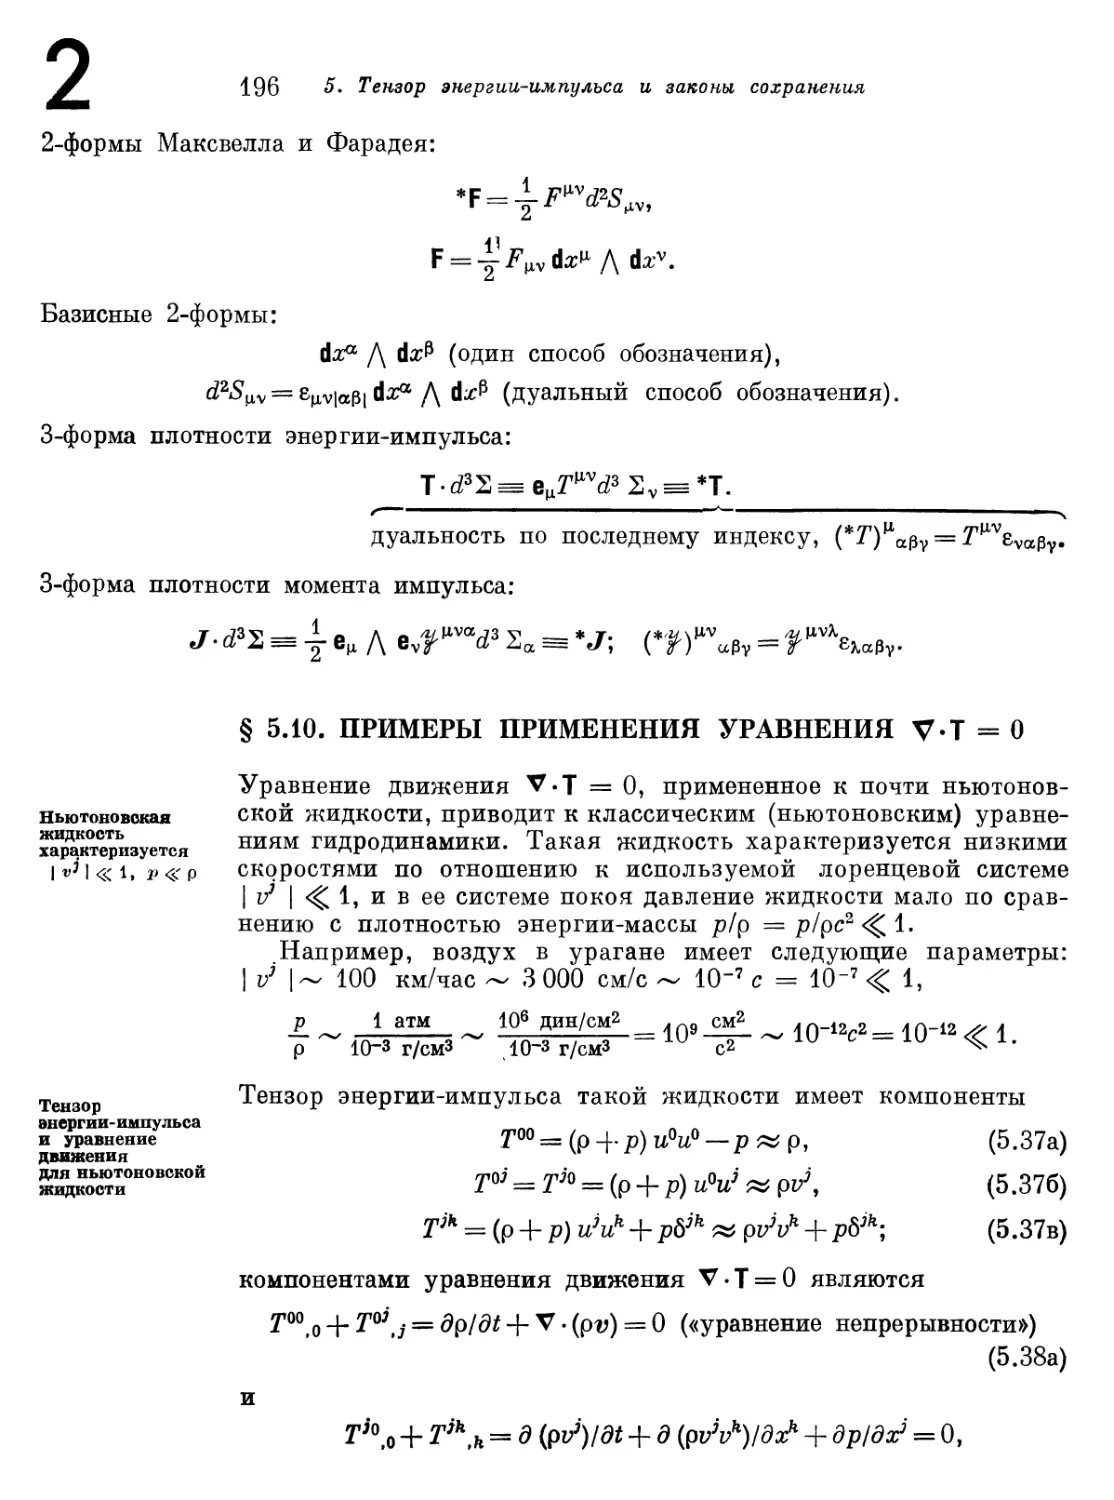 § 5.10. Примеры применения уравнения Delta T=0